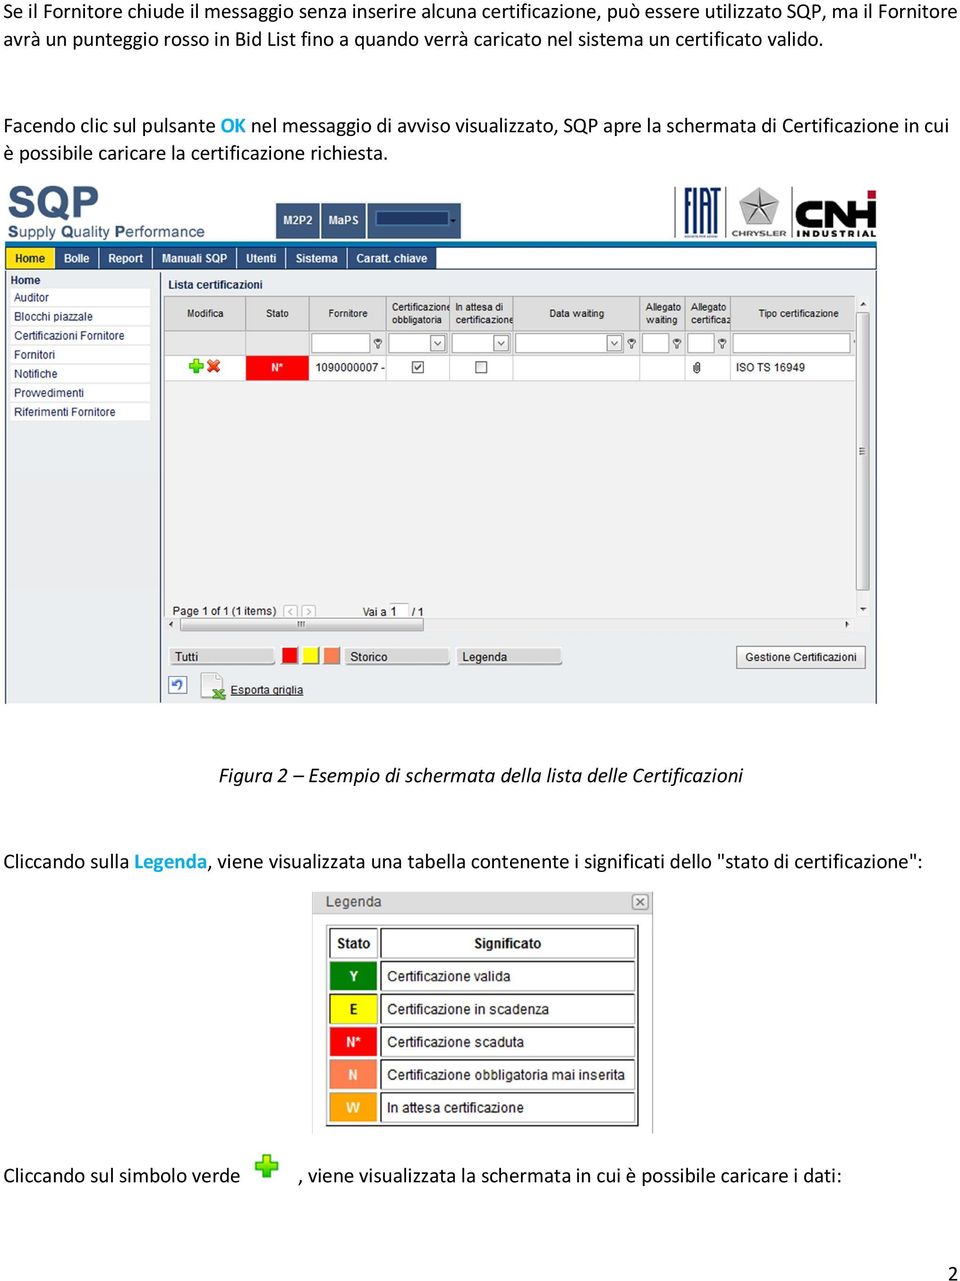 Facendo clic sul pulsante OK nel messaggio di avviso visualizzato, SQP apre la schermata di Certificazione in cui è possibile caricare la certificazione richiesta.